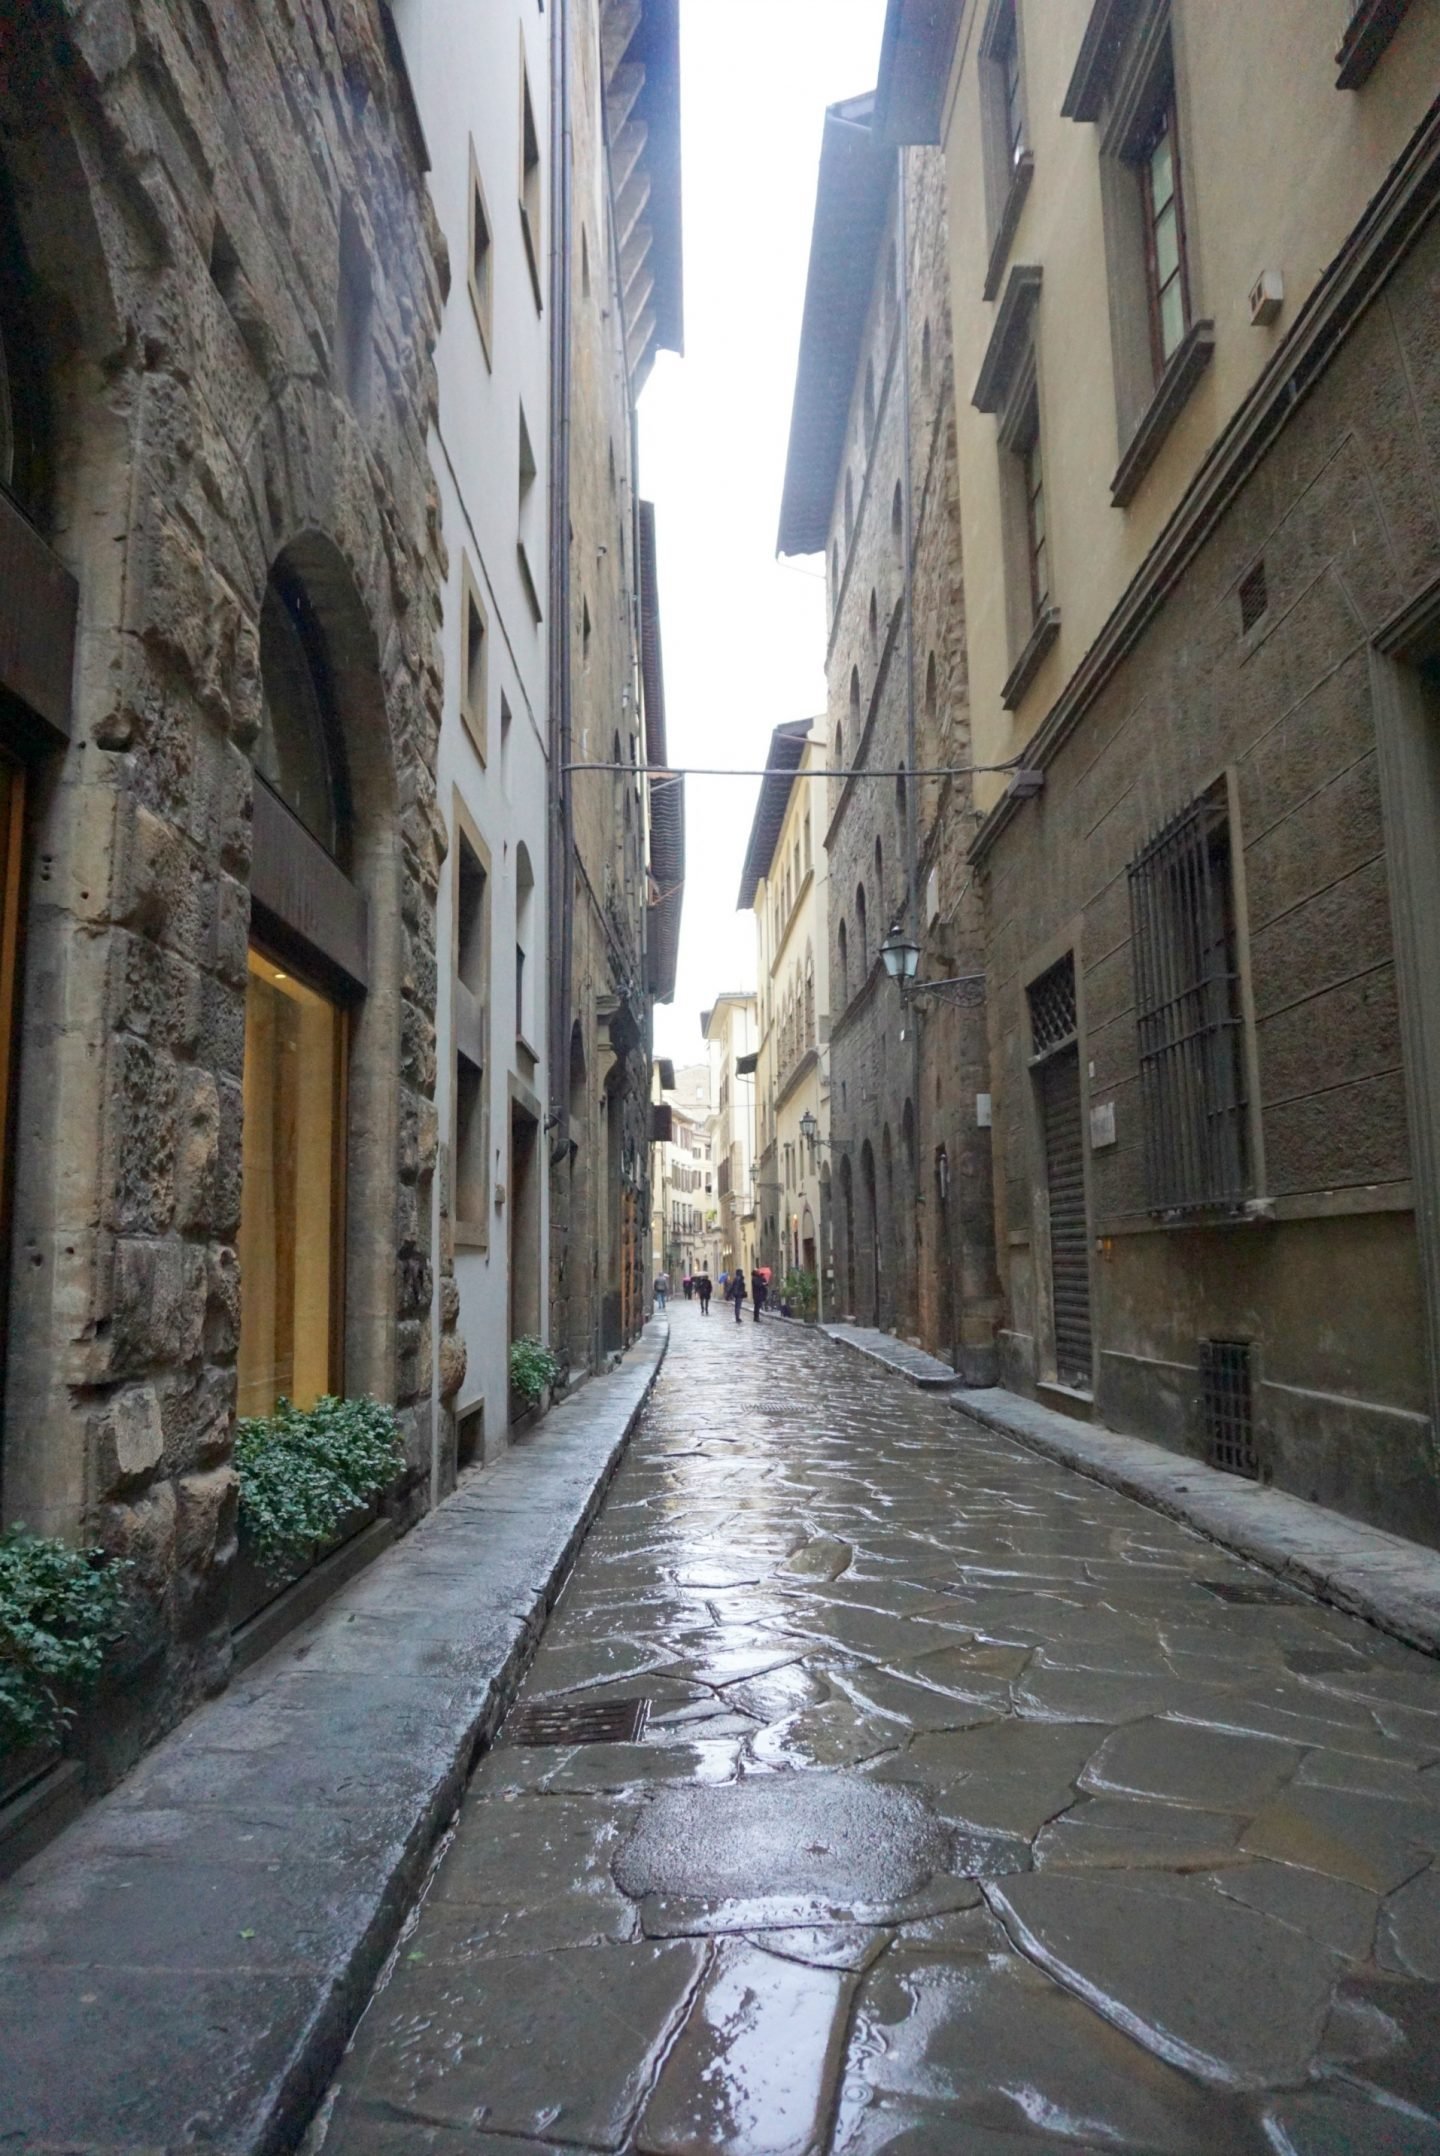 Tuscany Backstreets in the rain www.extraordinarychaos.com